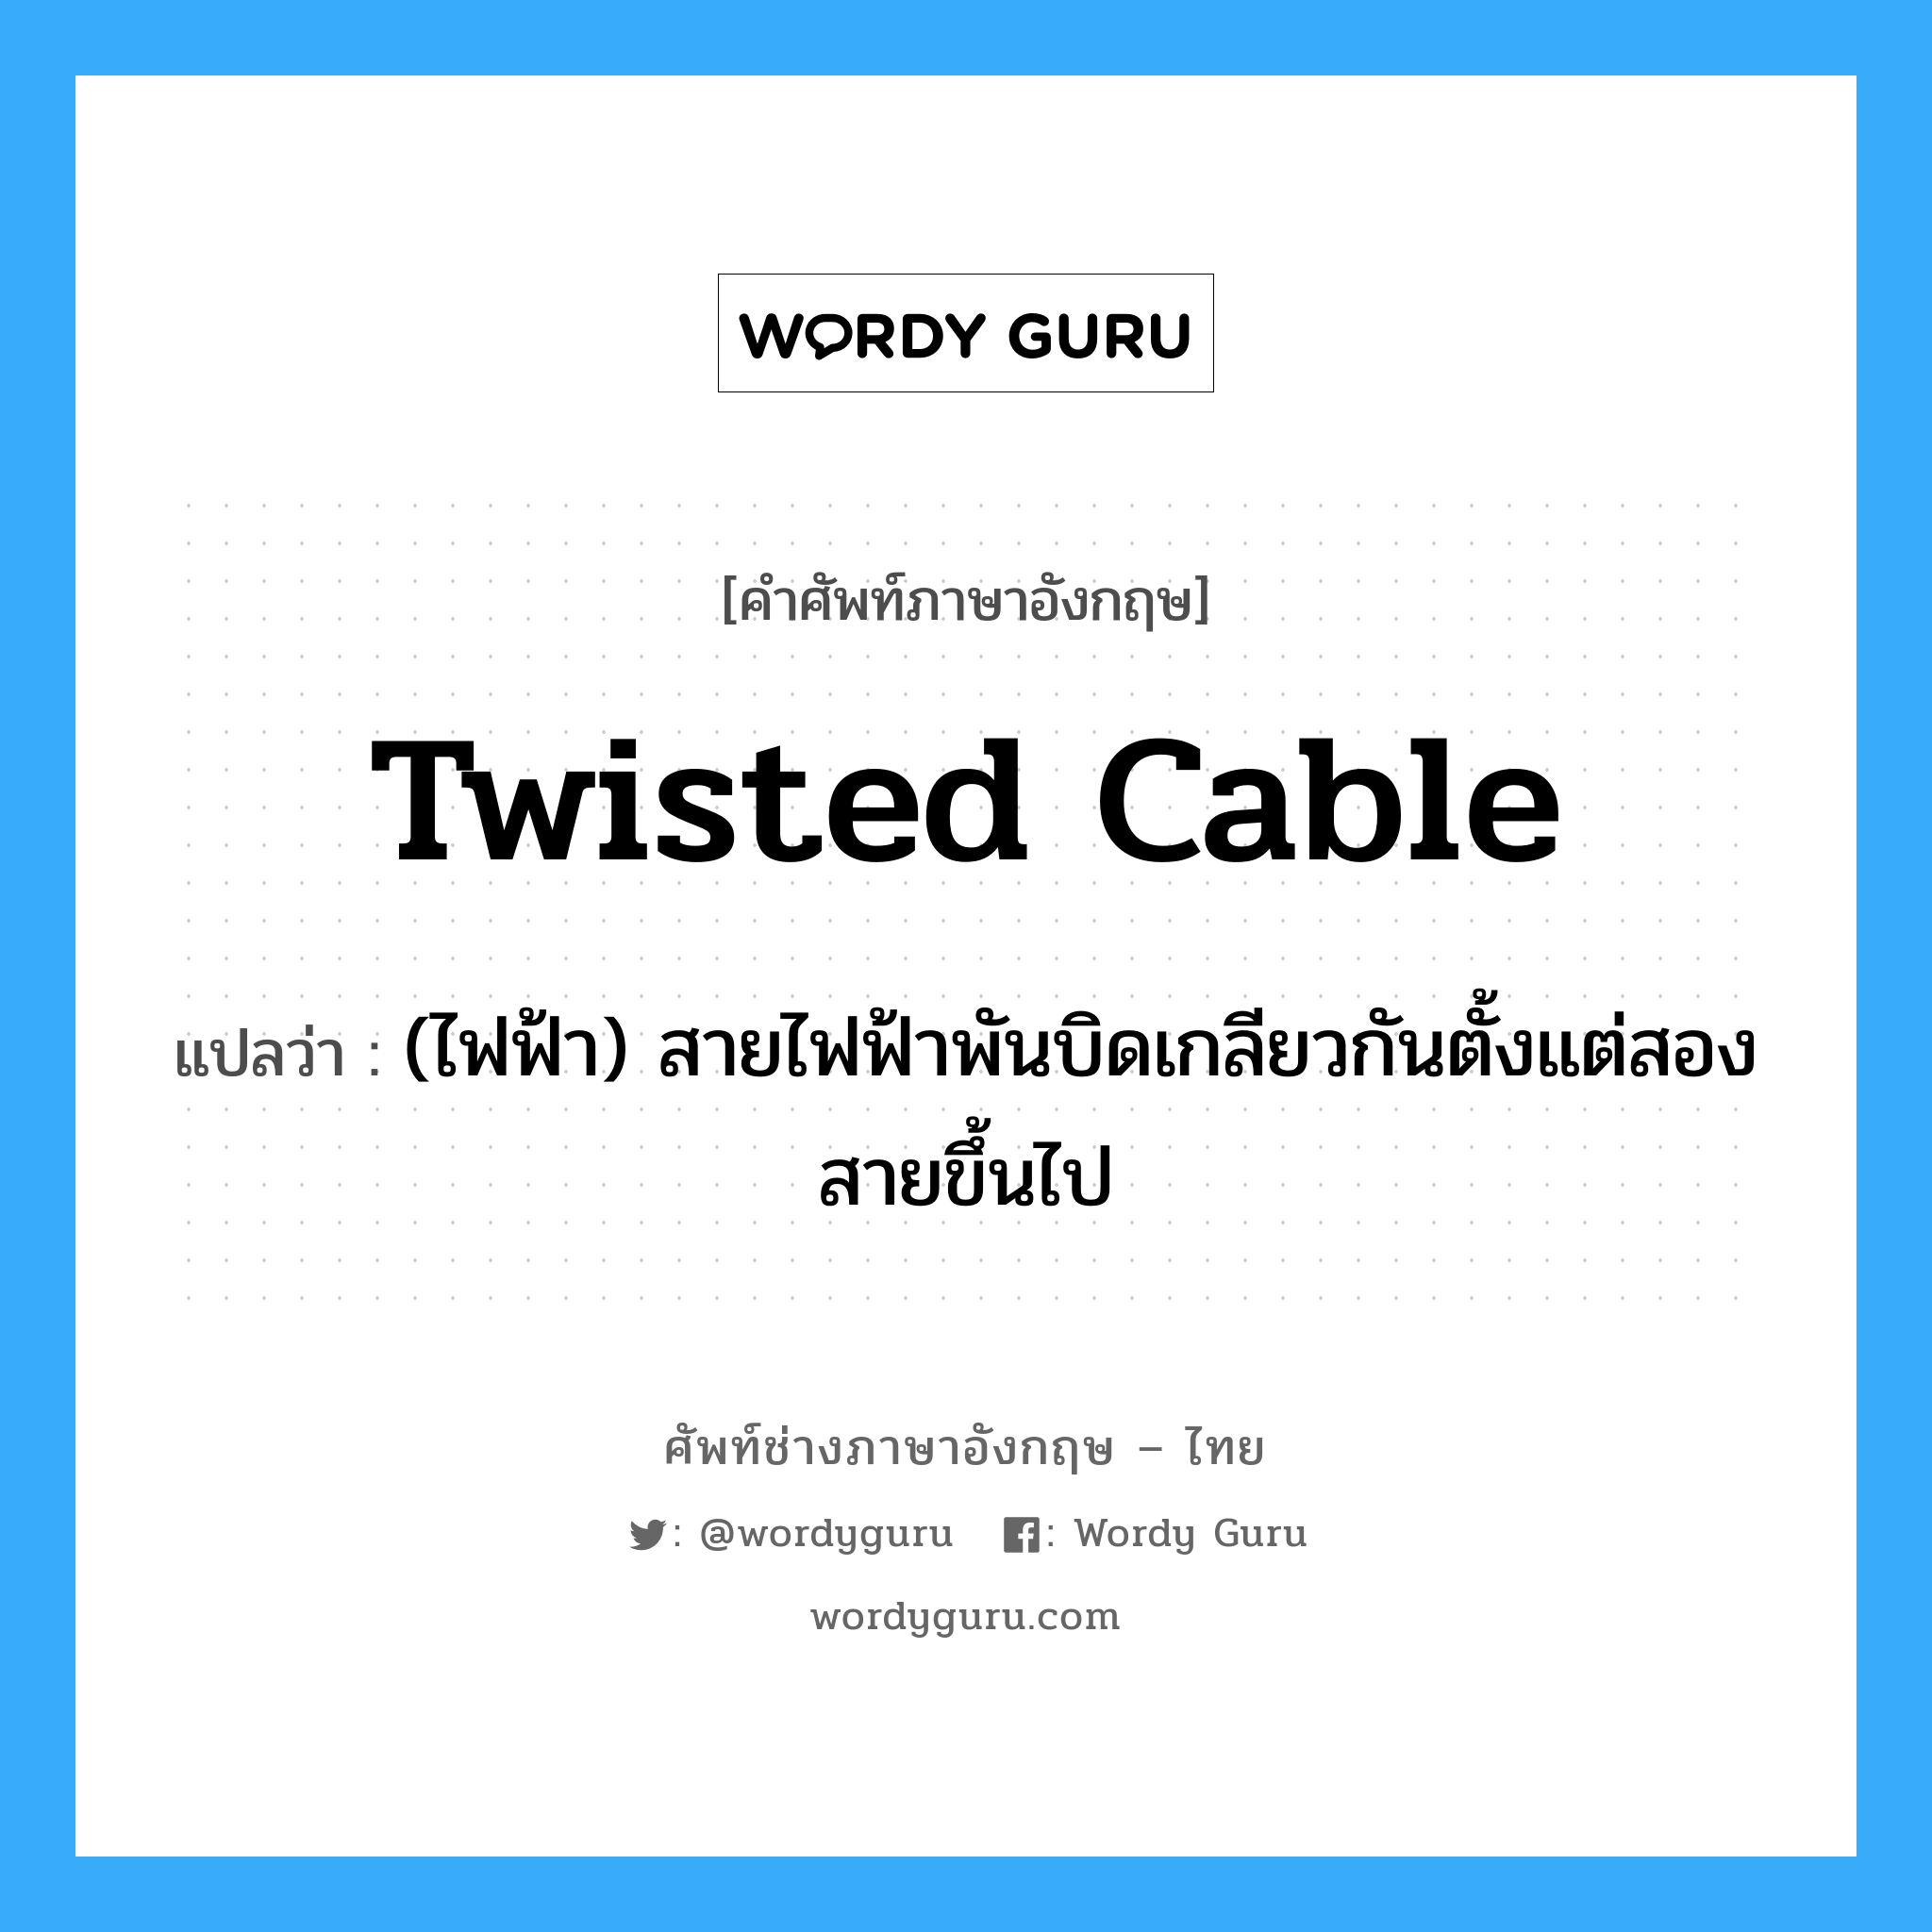 twisted cable แปลว่า?, คำศัพท์ช่างภาษาอังกฤษ - ไทย twisted cable คำศัพท์ภาษาอังกฤษ twisted cable แปลว่า (ไฟฟ้า) สายไฟฟ้าพันบิดเกลียวกันตั้งแต่สองสายขึ้นไป